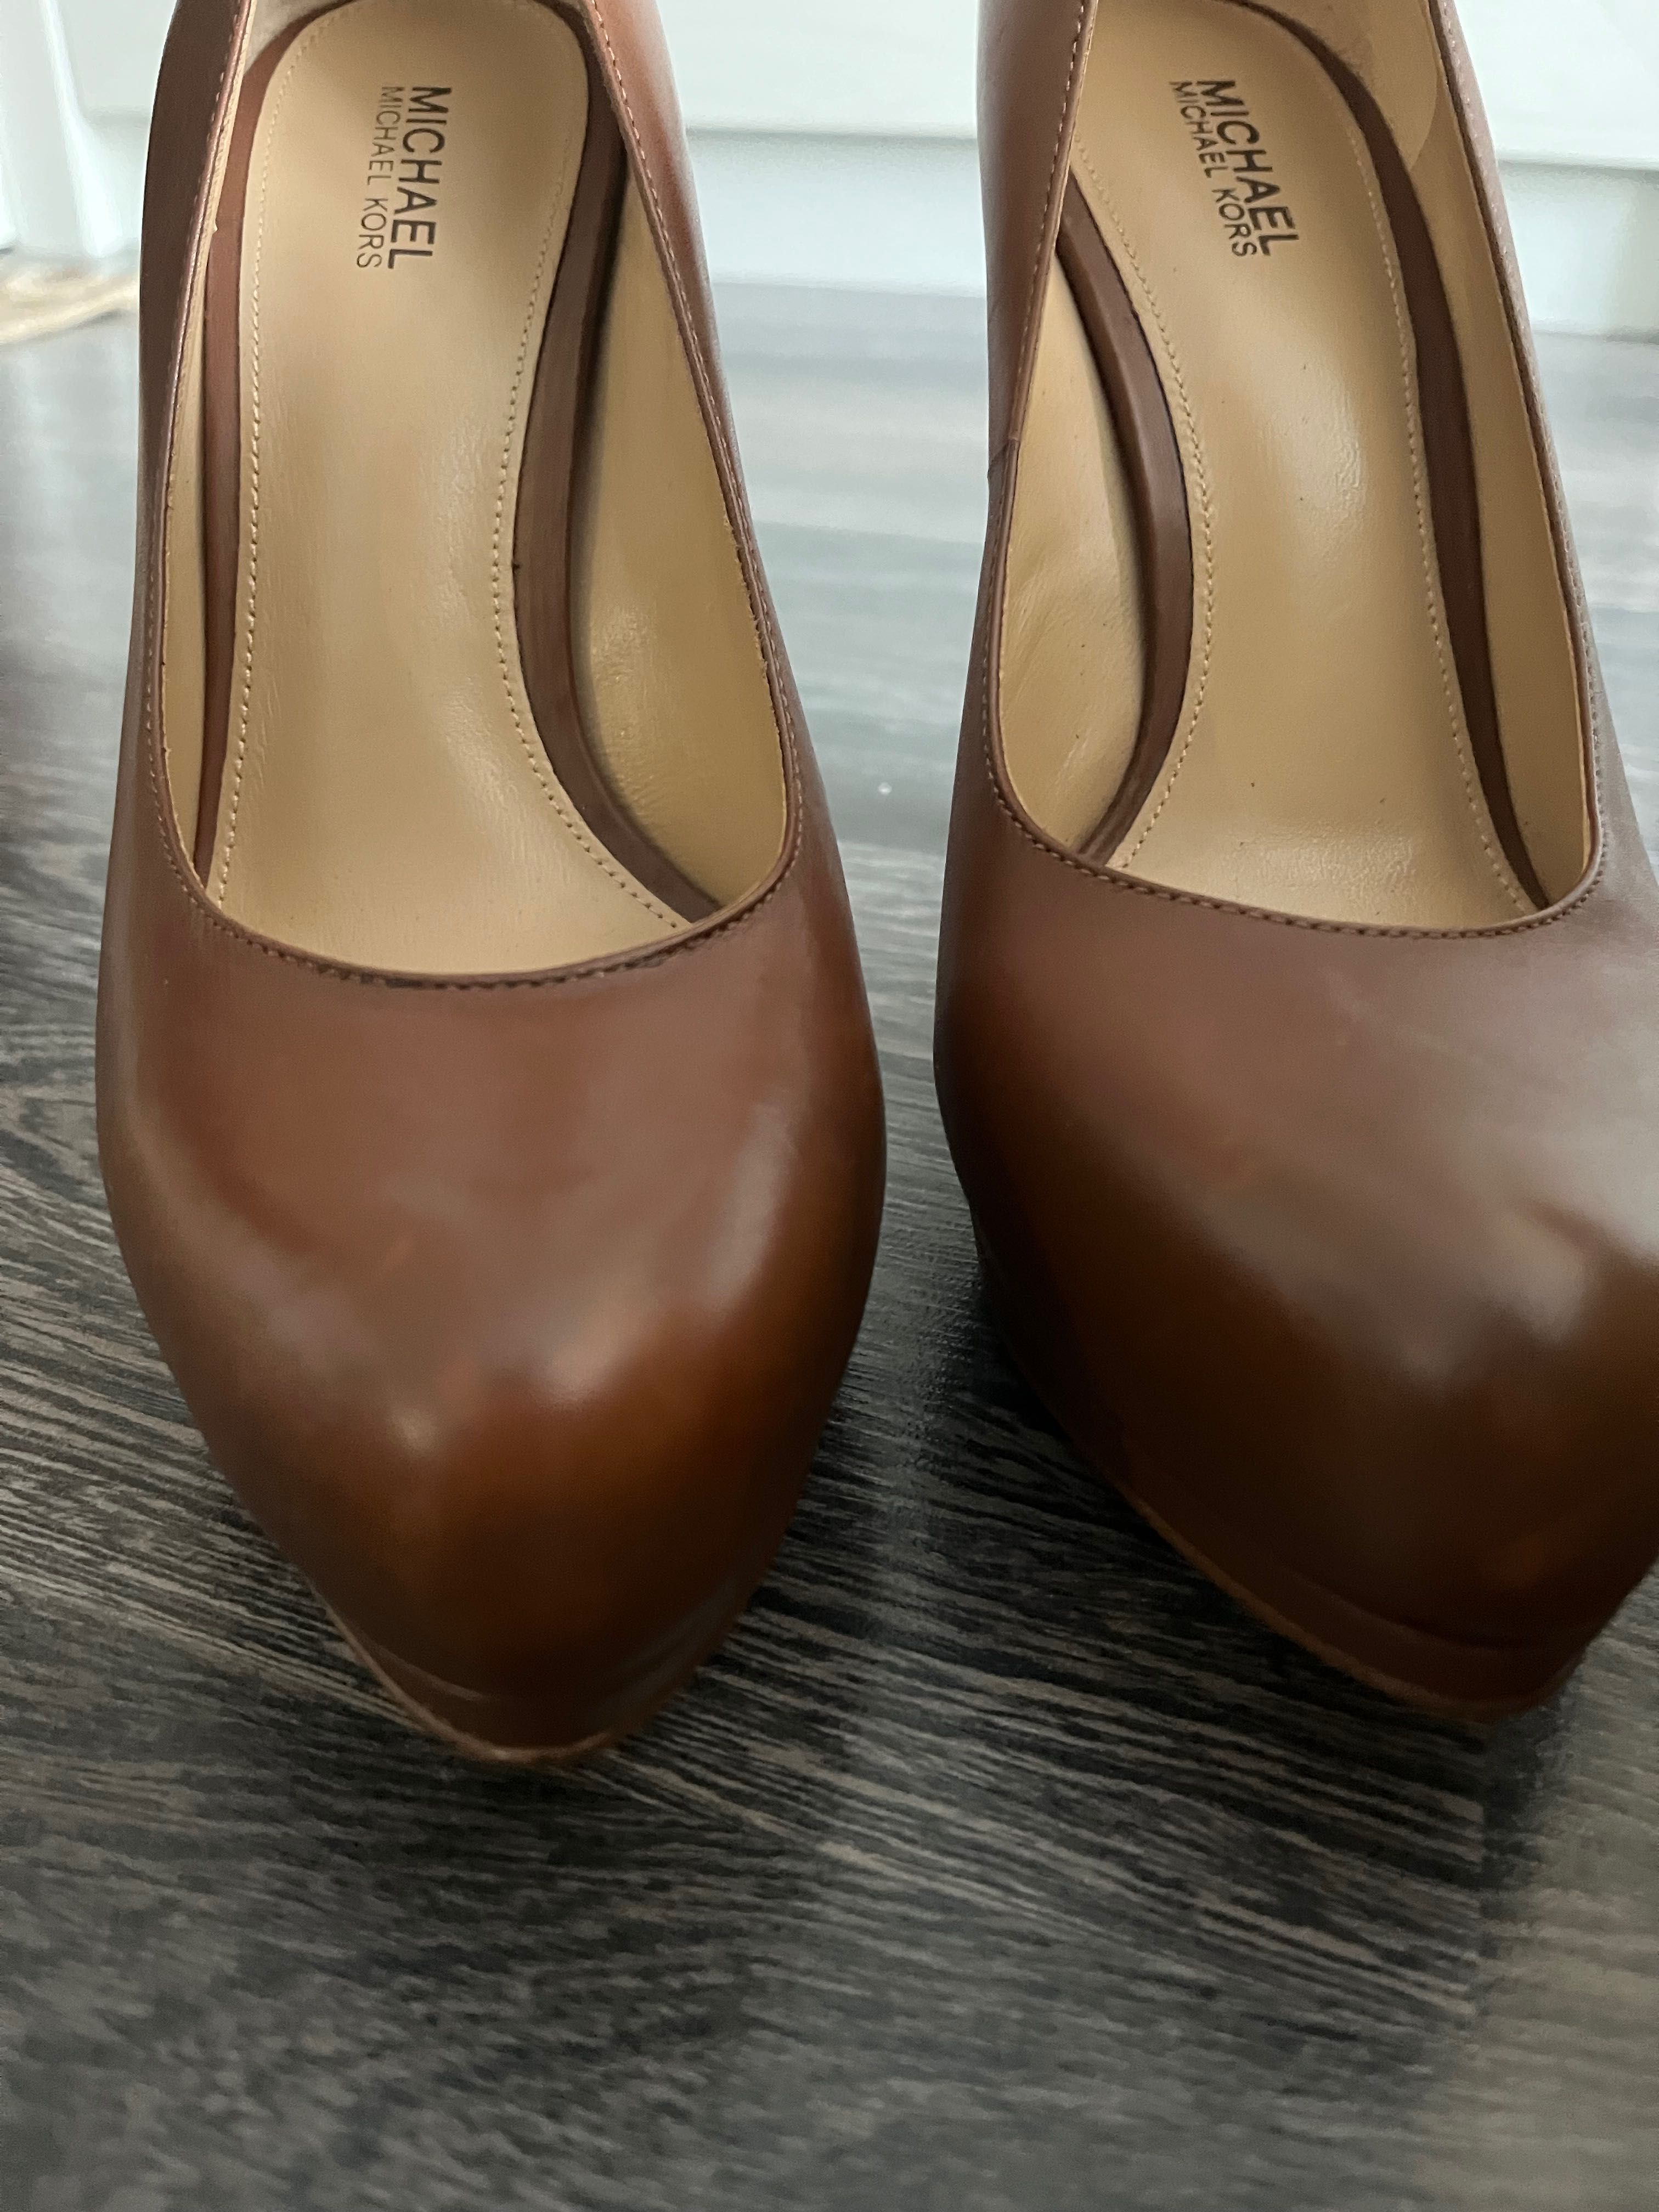 Дамски обувки Оригинални MICHAEL KORS, размер 37